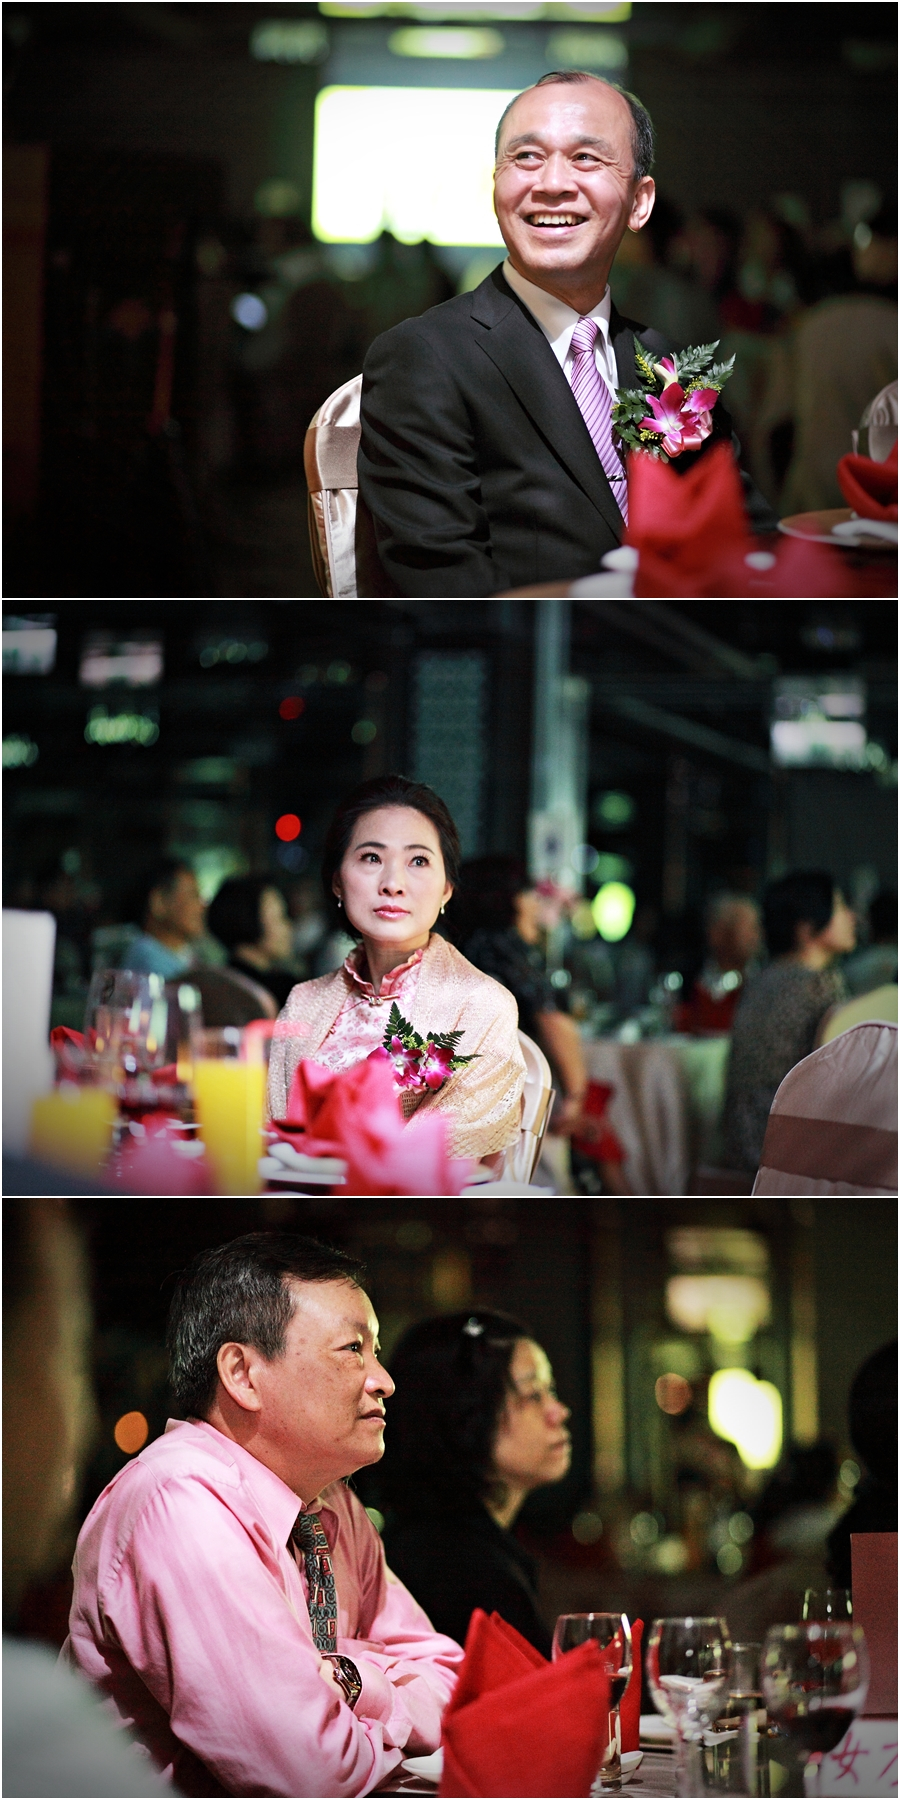 婚攝推薦,搖滾雙魚,婚禮攝影,台北福容,婚攝,婚禮記錄